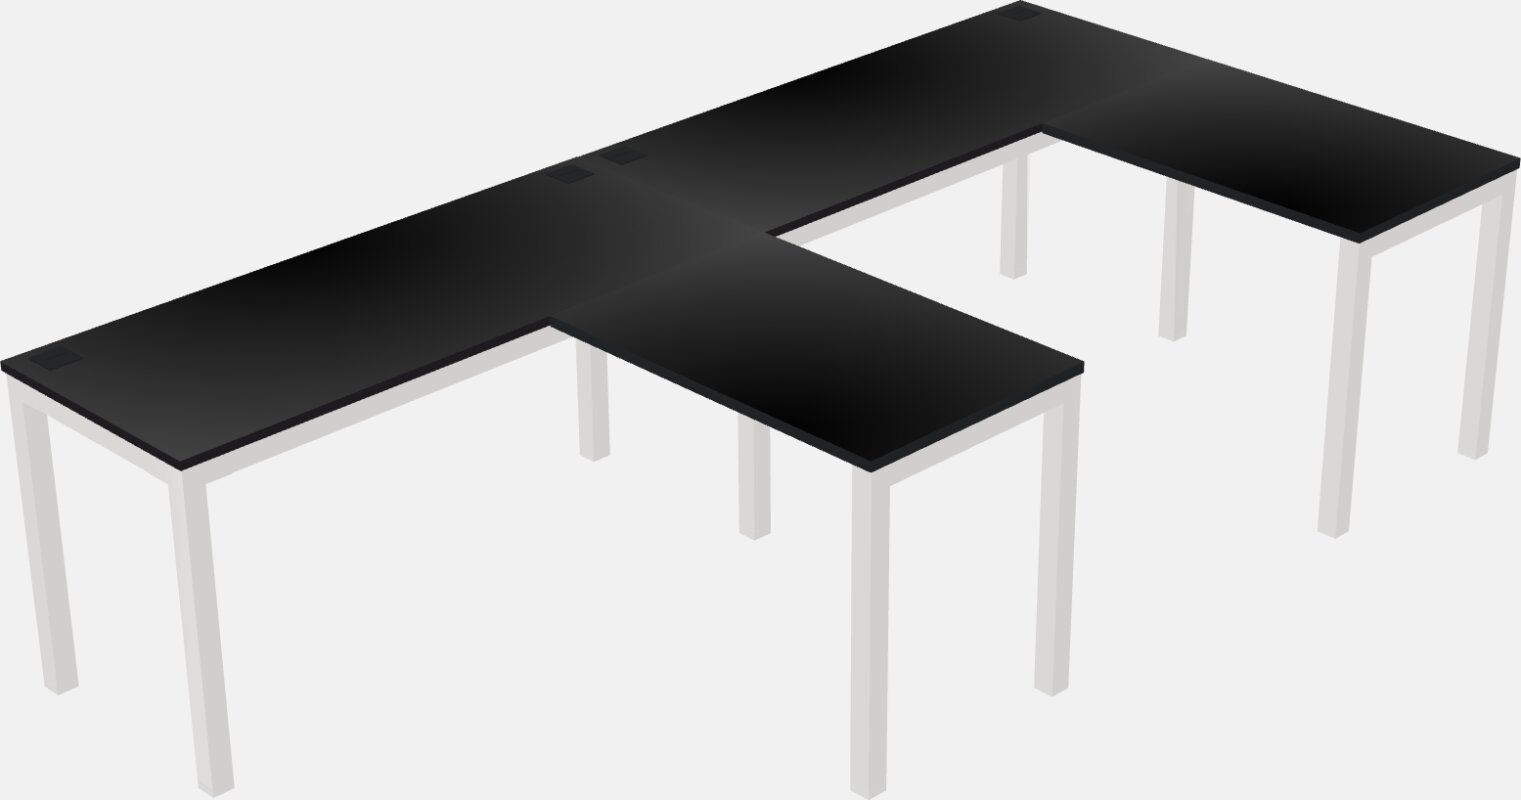 L-shaped na mesa